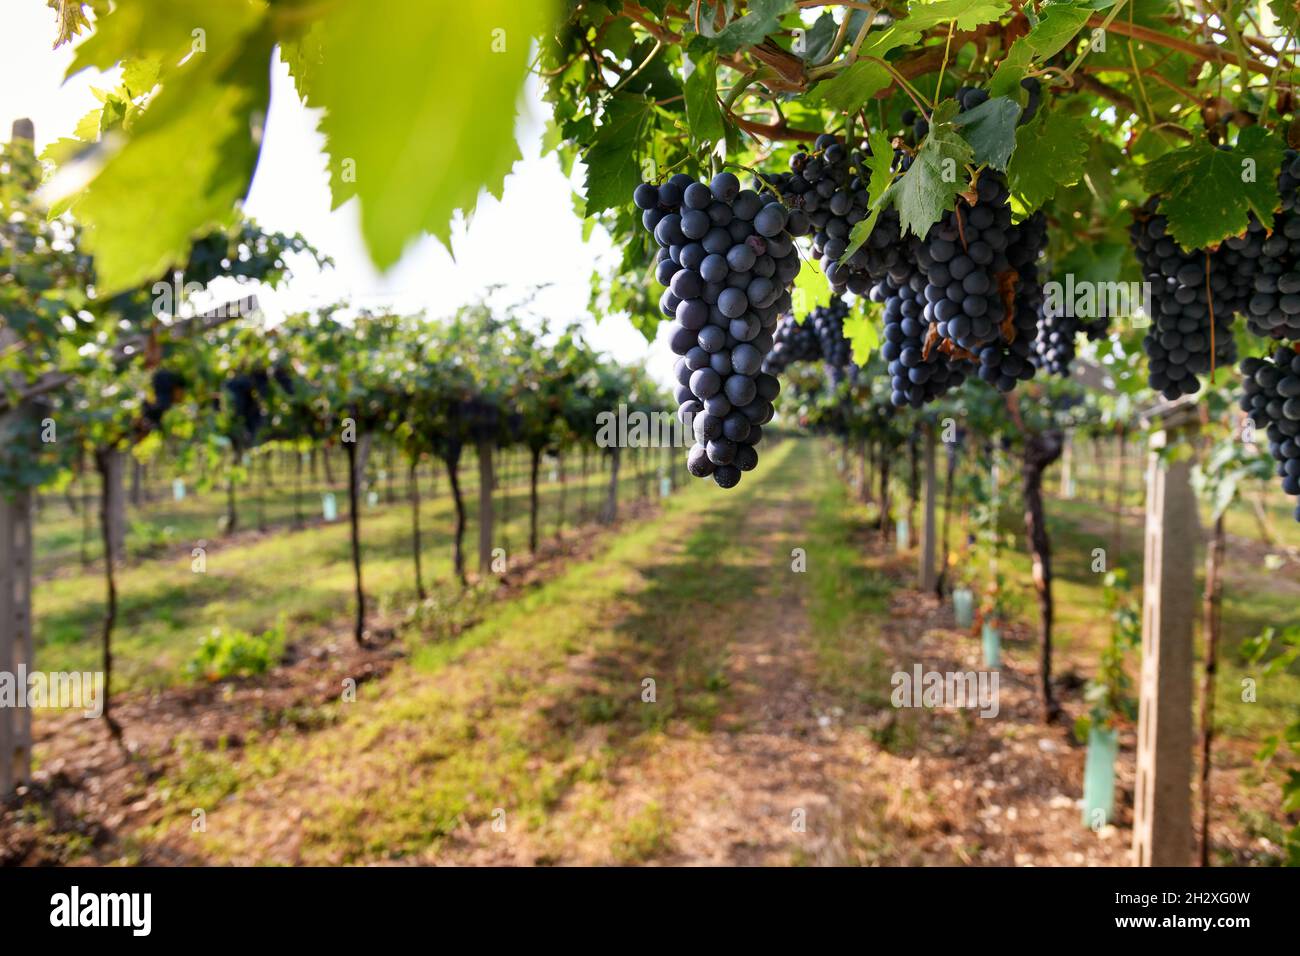 Trauben von reifen schwarzen Trauben hängen auf der Rebe in einem gepflegten, gerillten Weinberg auf einem Weingut in einem Konzept der Weinproduktion und des Weinbaus Stockfoto